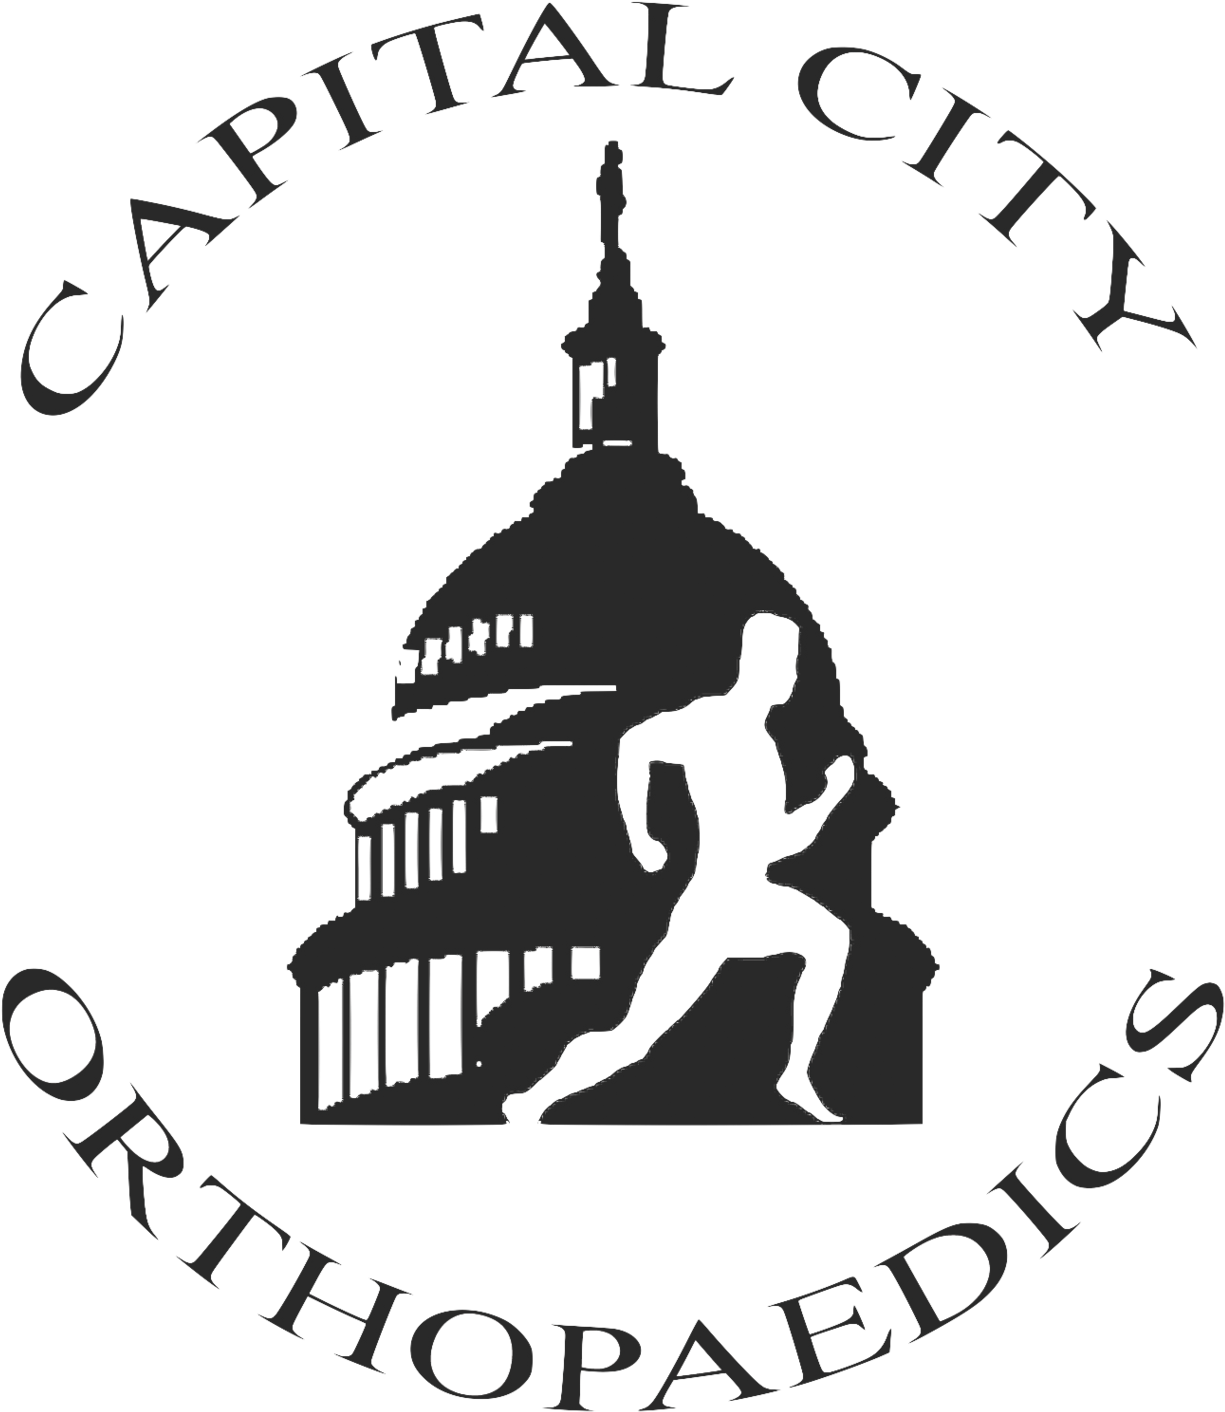 Capital City Orthopedics - Capital City Orthopaedics: Michael W. Burris, Md (1500x1526)